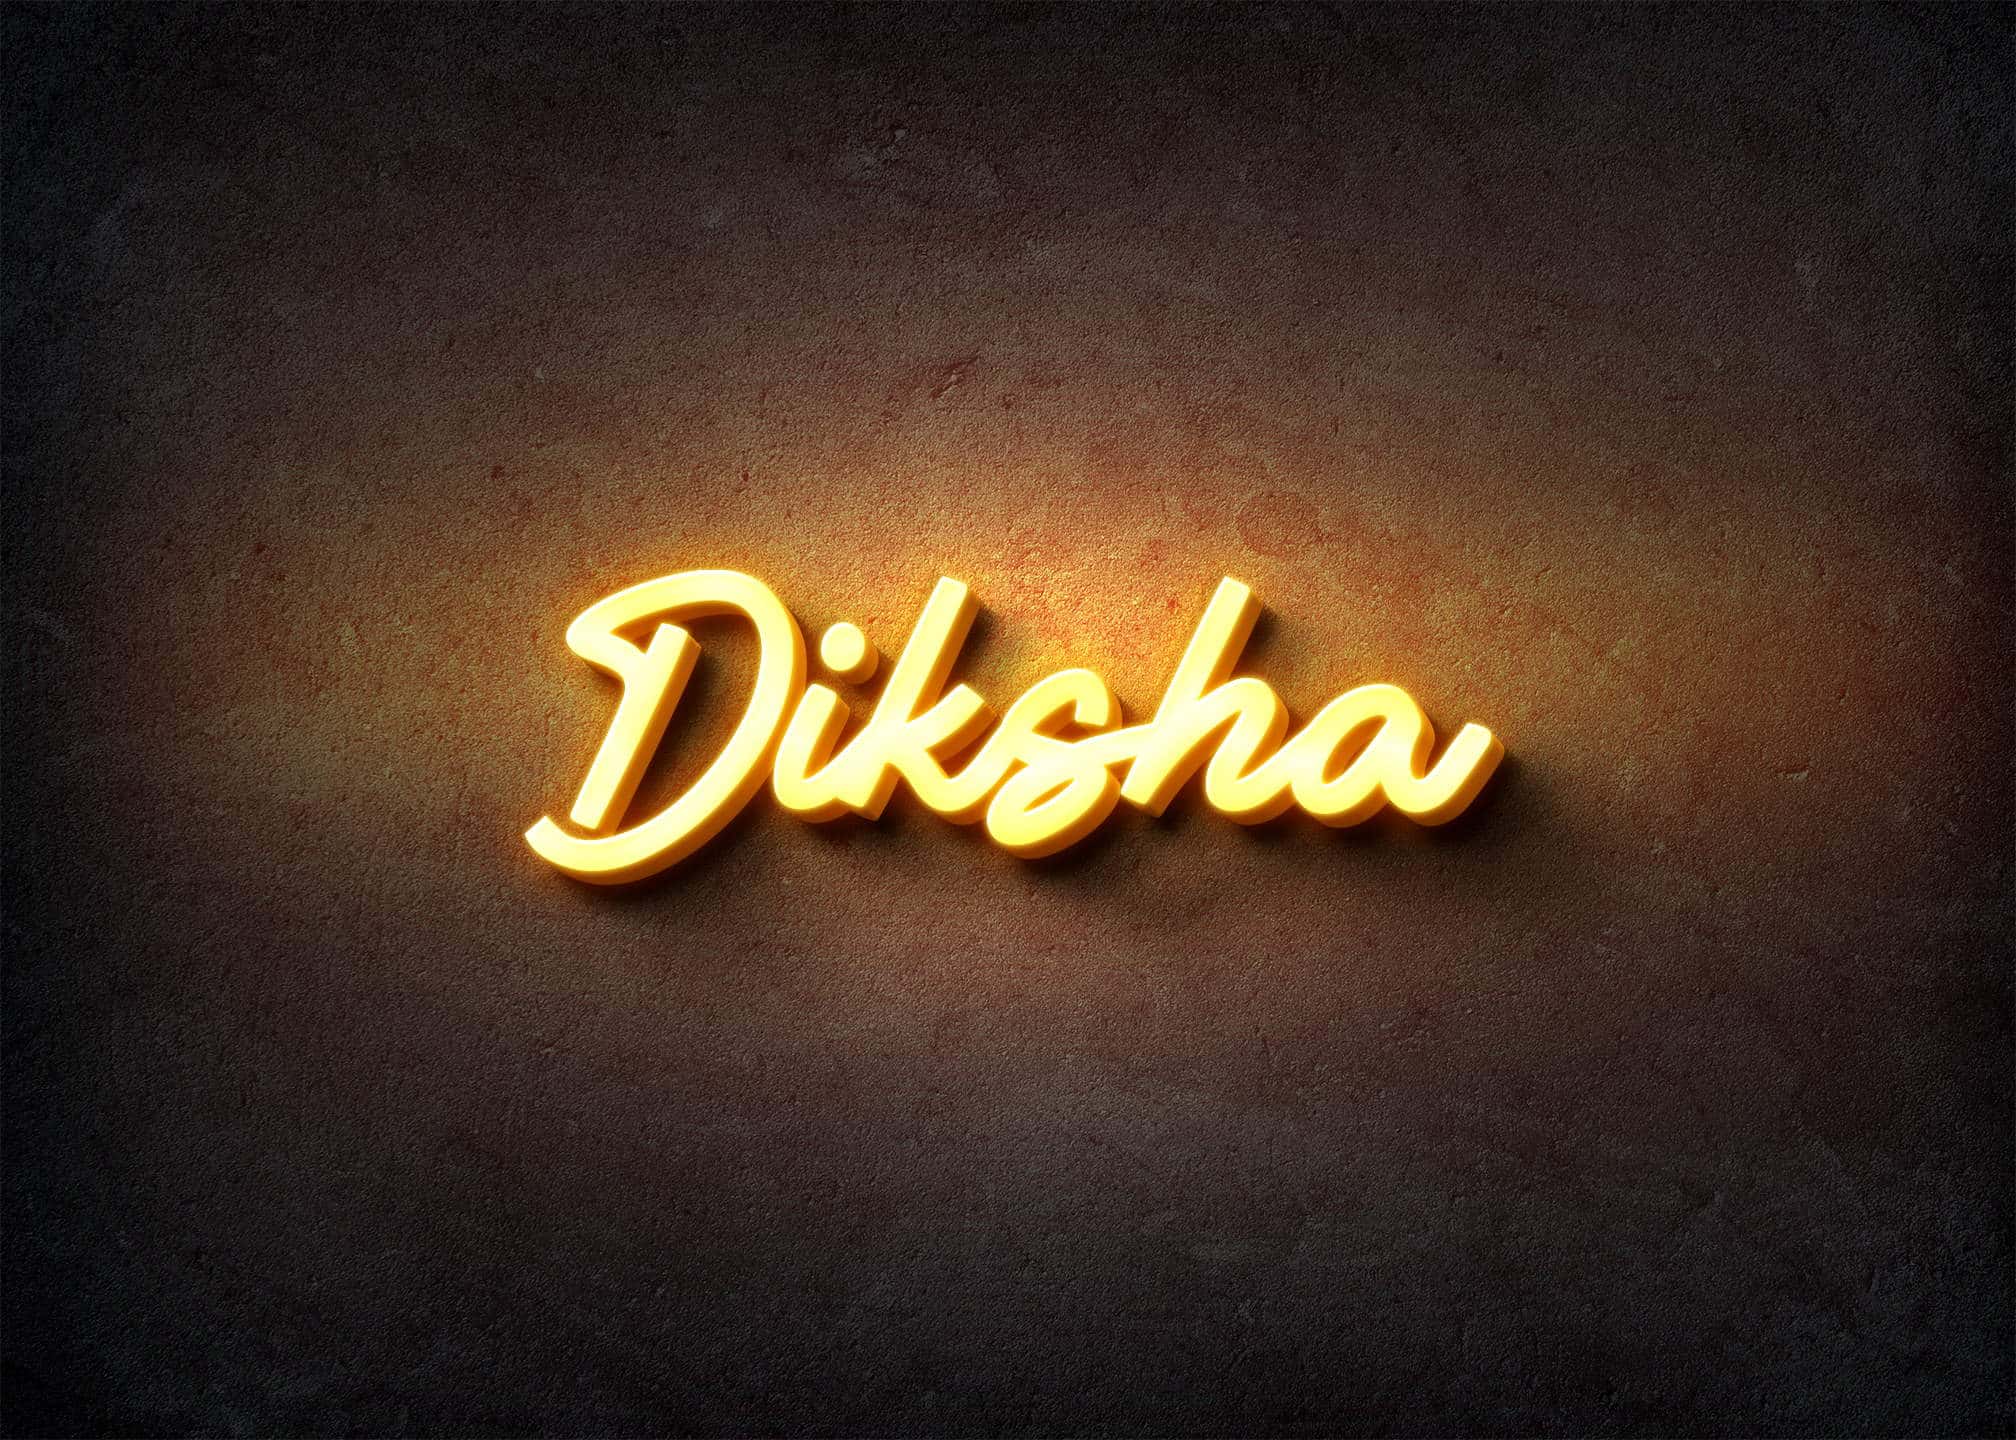 Diksha ❤️ logo comment your name #instagram #viral #trending #art #short  feed - YouTube